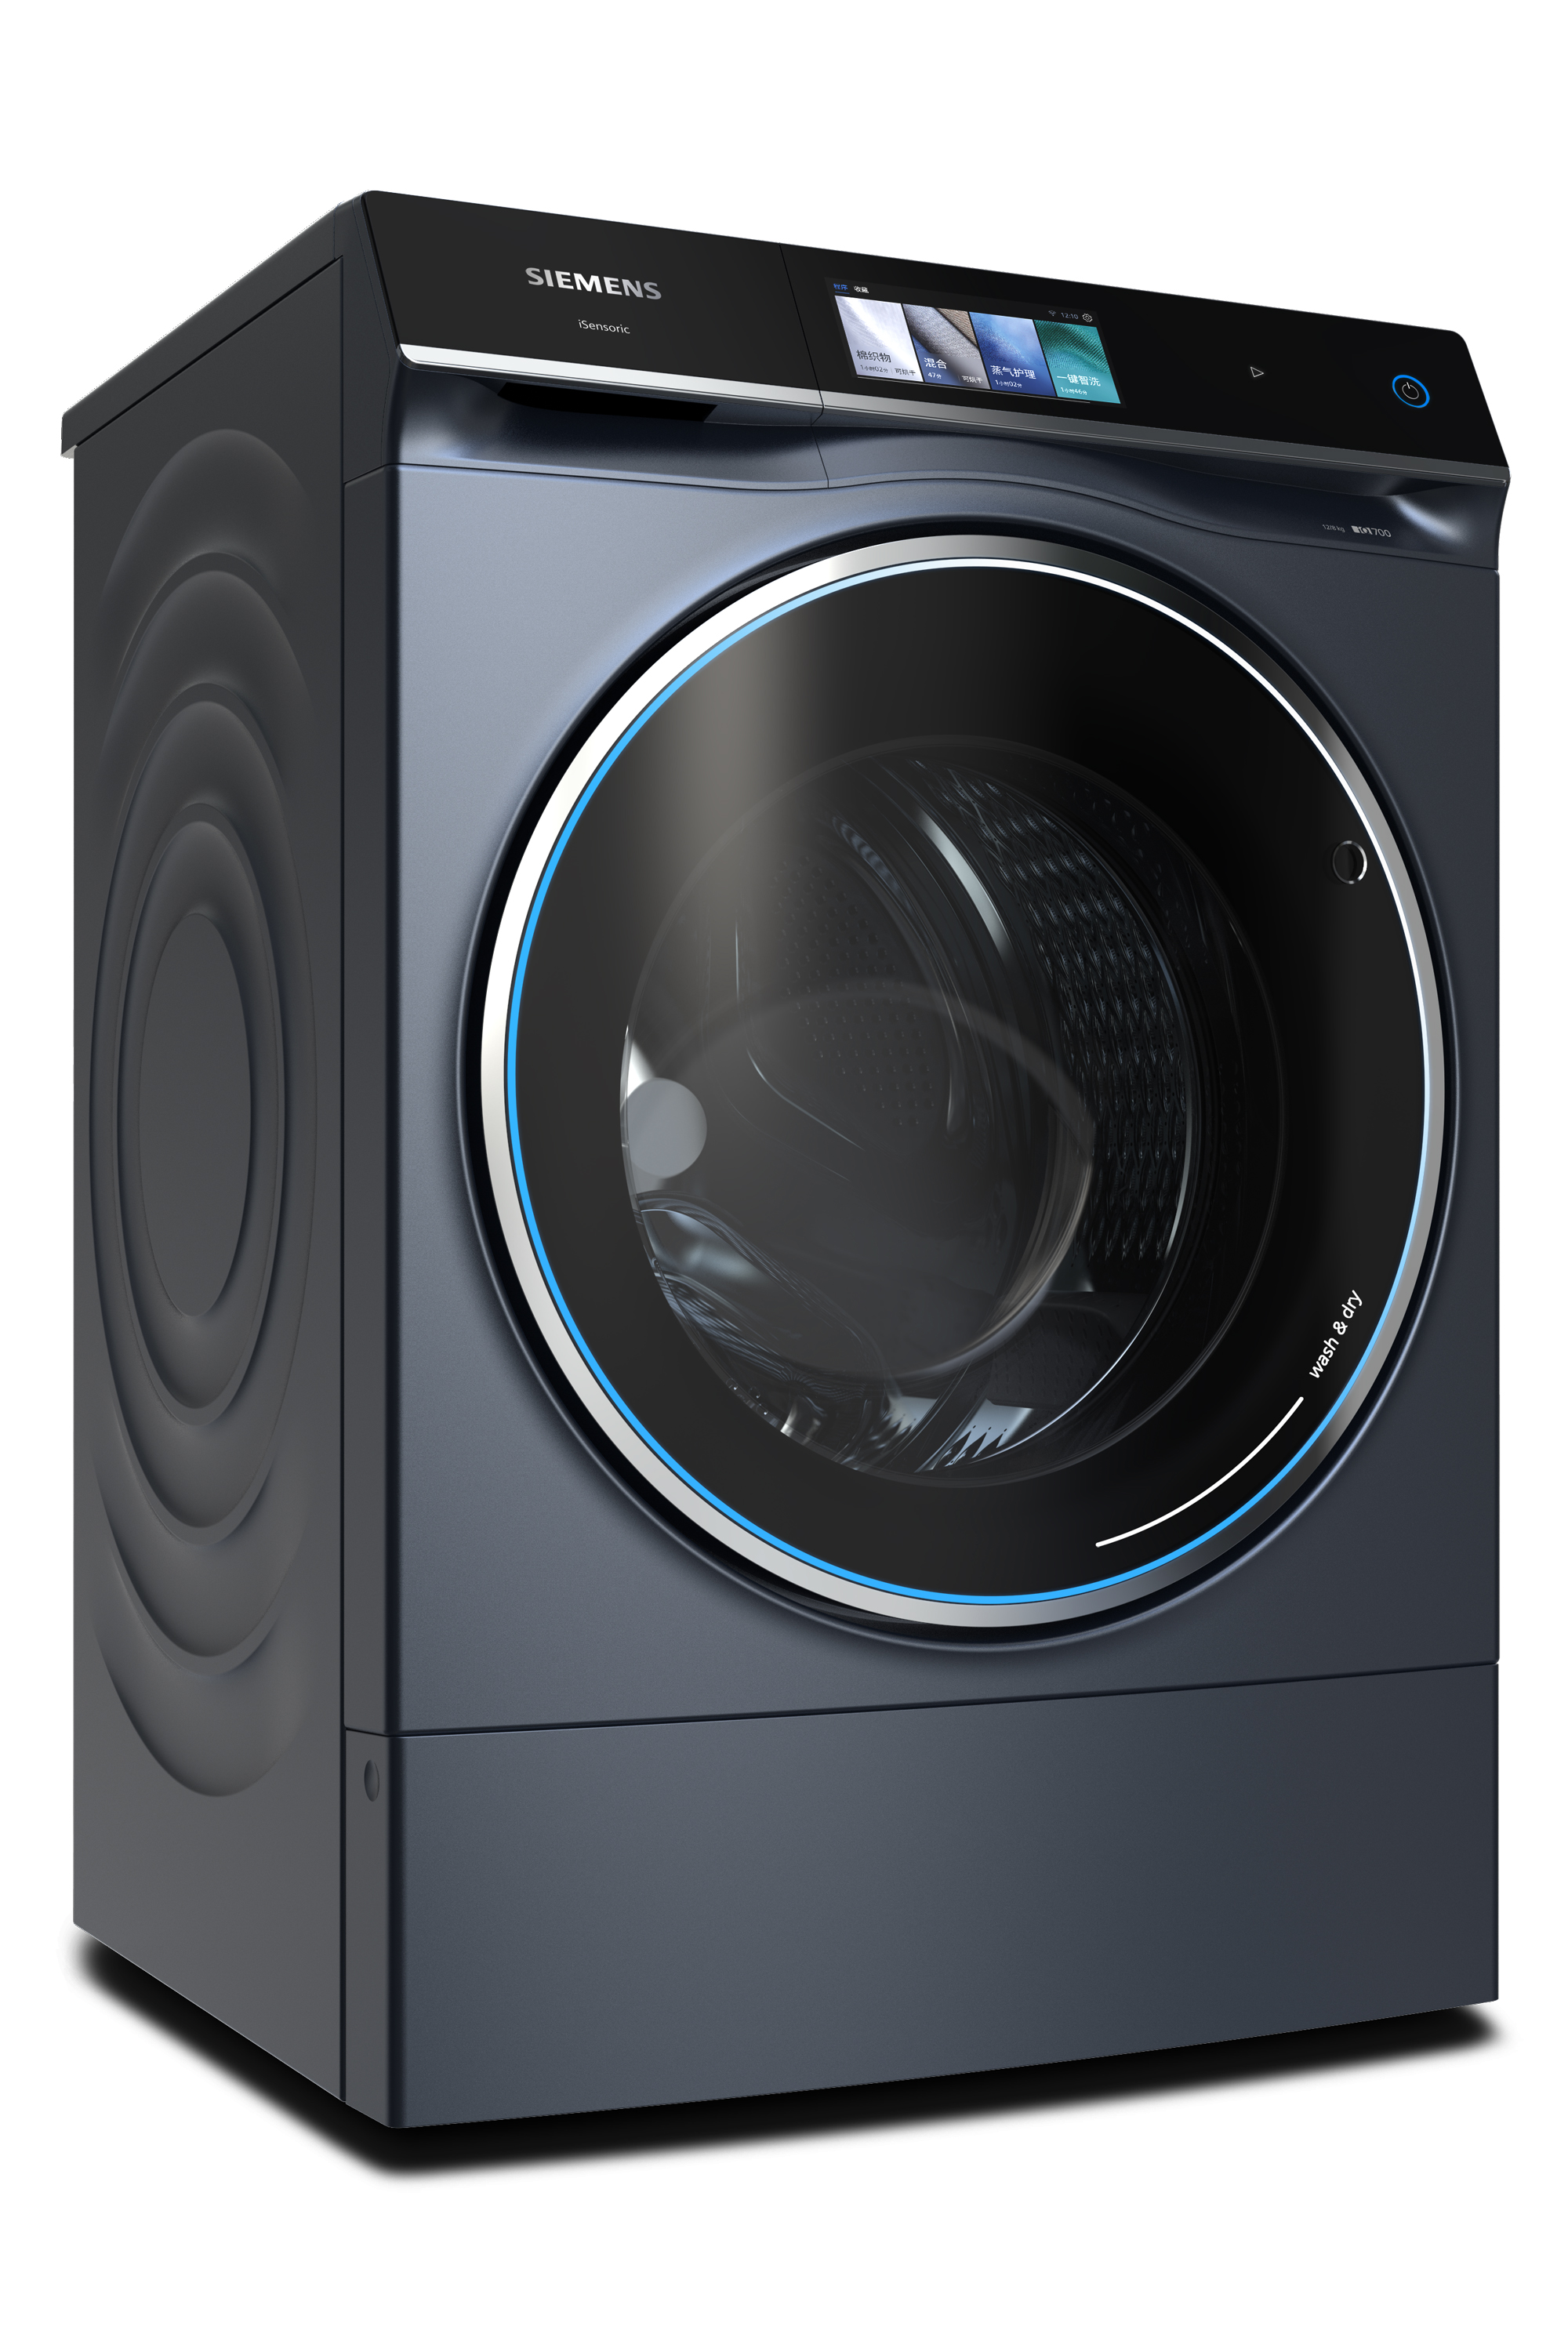 Siemens iQ700 Super-size washer-dryer